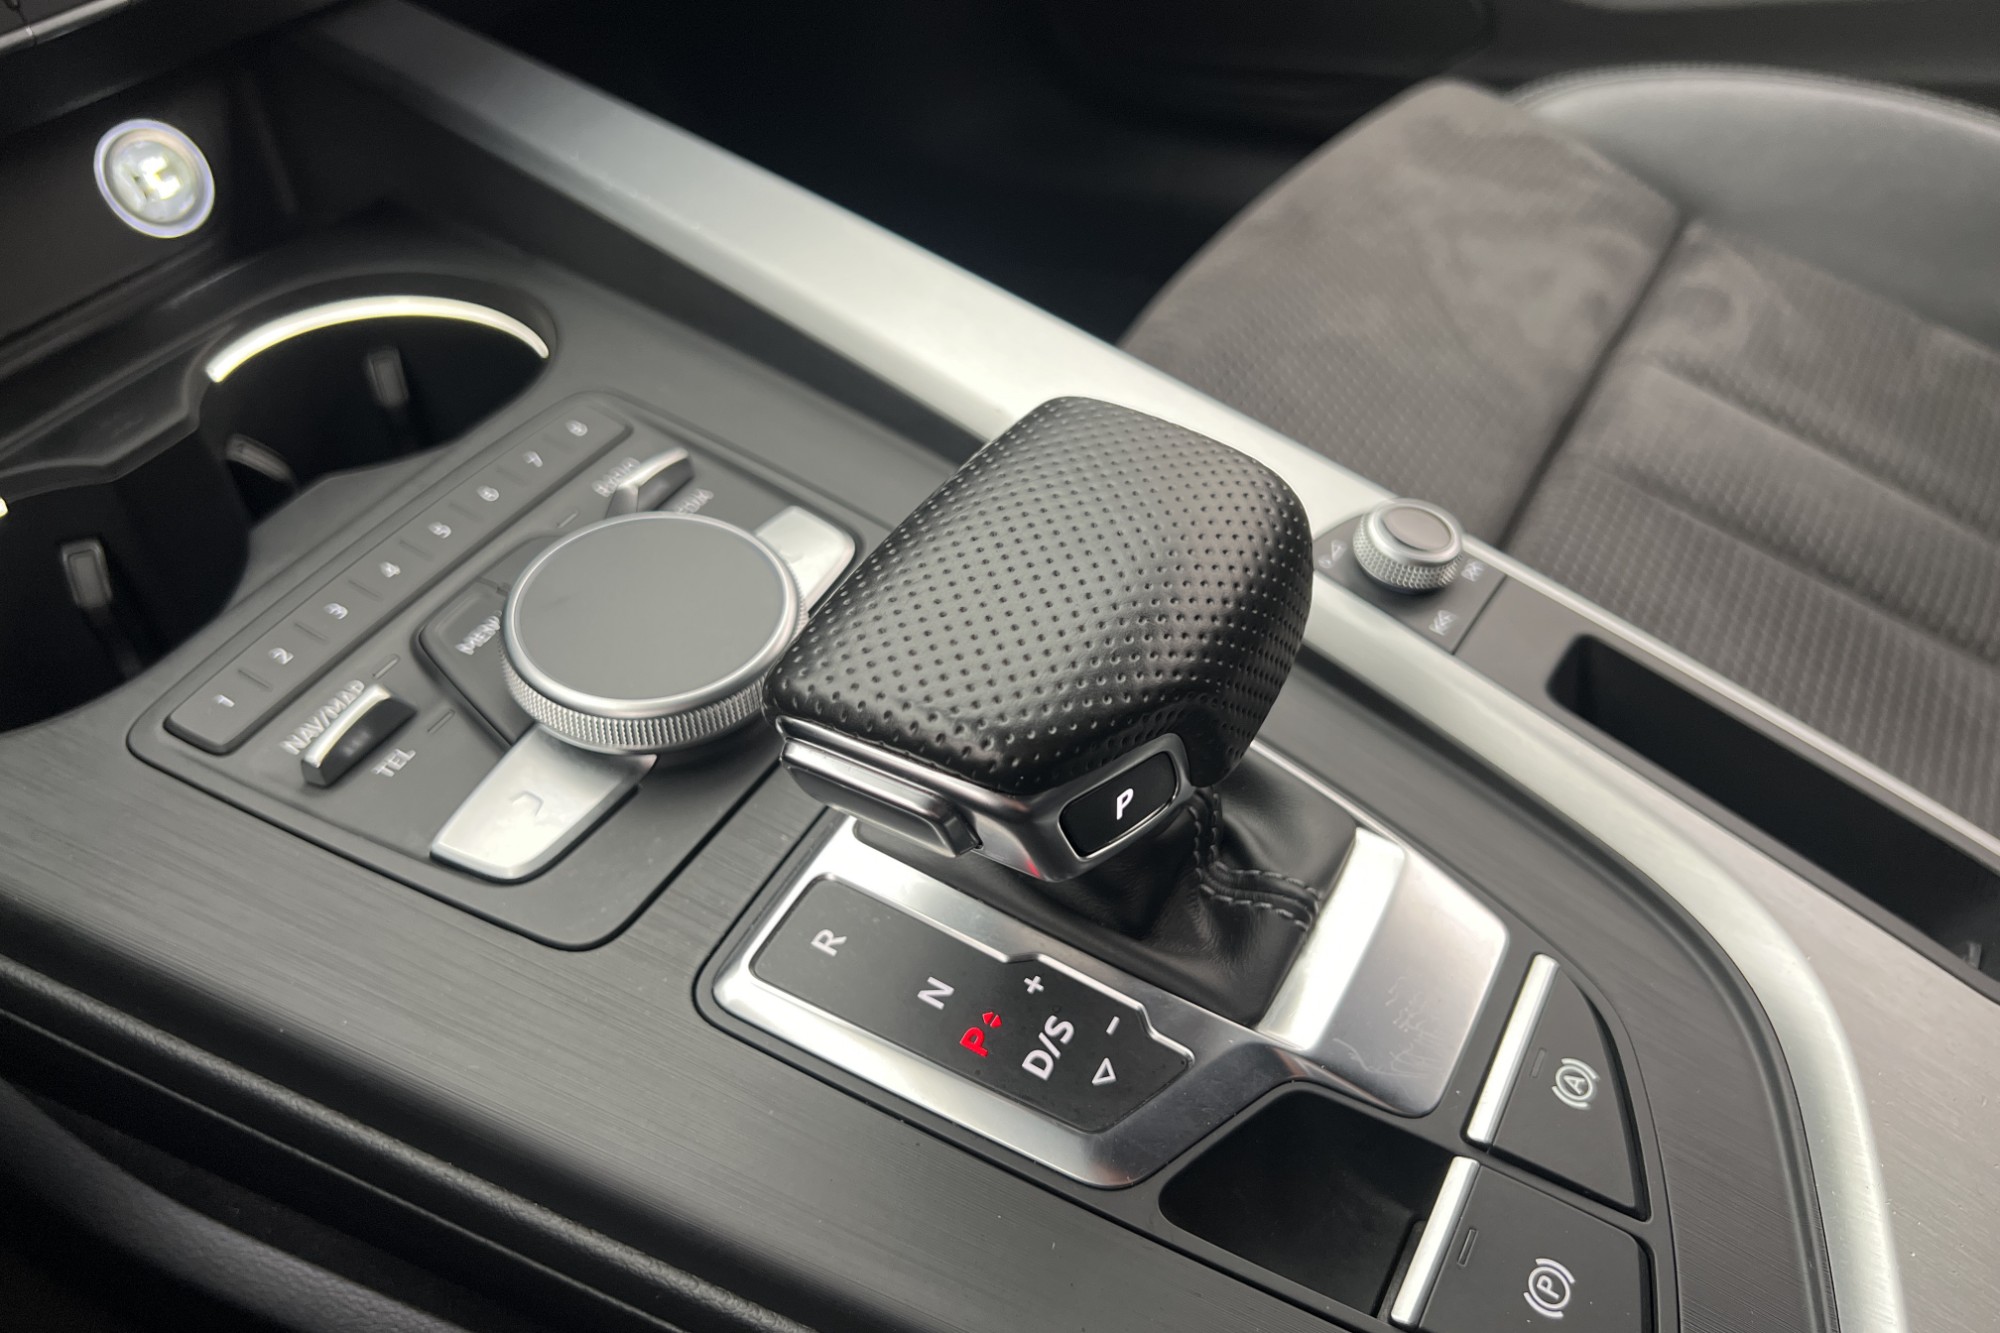 Audi A5 Coupé 2.0 TDI 190hk S-Line RS-front Cockpit Kamera 